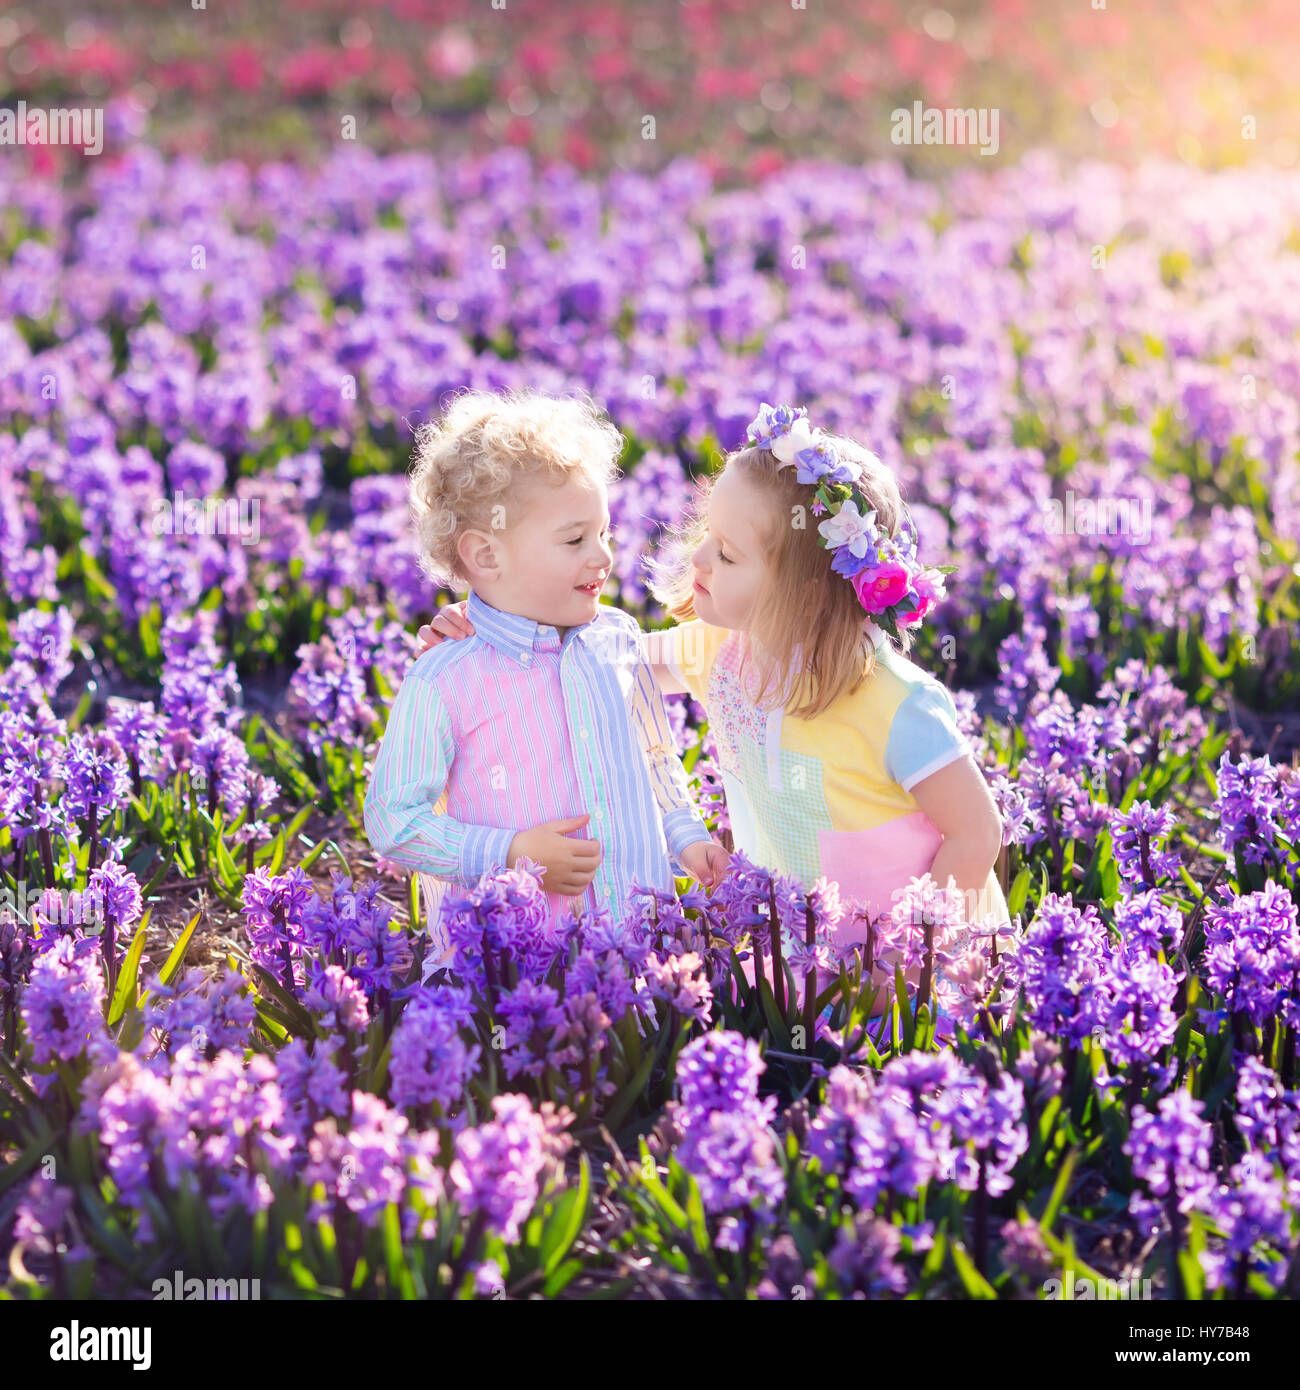 Kinder im Garten. Kinder spielen im Freien auf Hyazinthen Wiese. Kleine Mädchen und jungen, Bruder und Schwester, arbeiten im Garten, Hyazinthe Blumen Pflanzen, wa Stockfoto